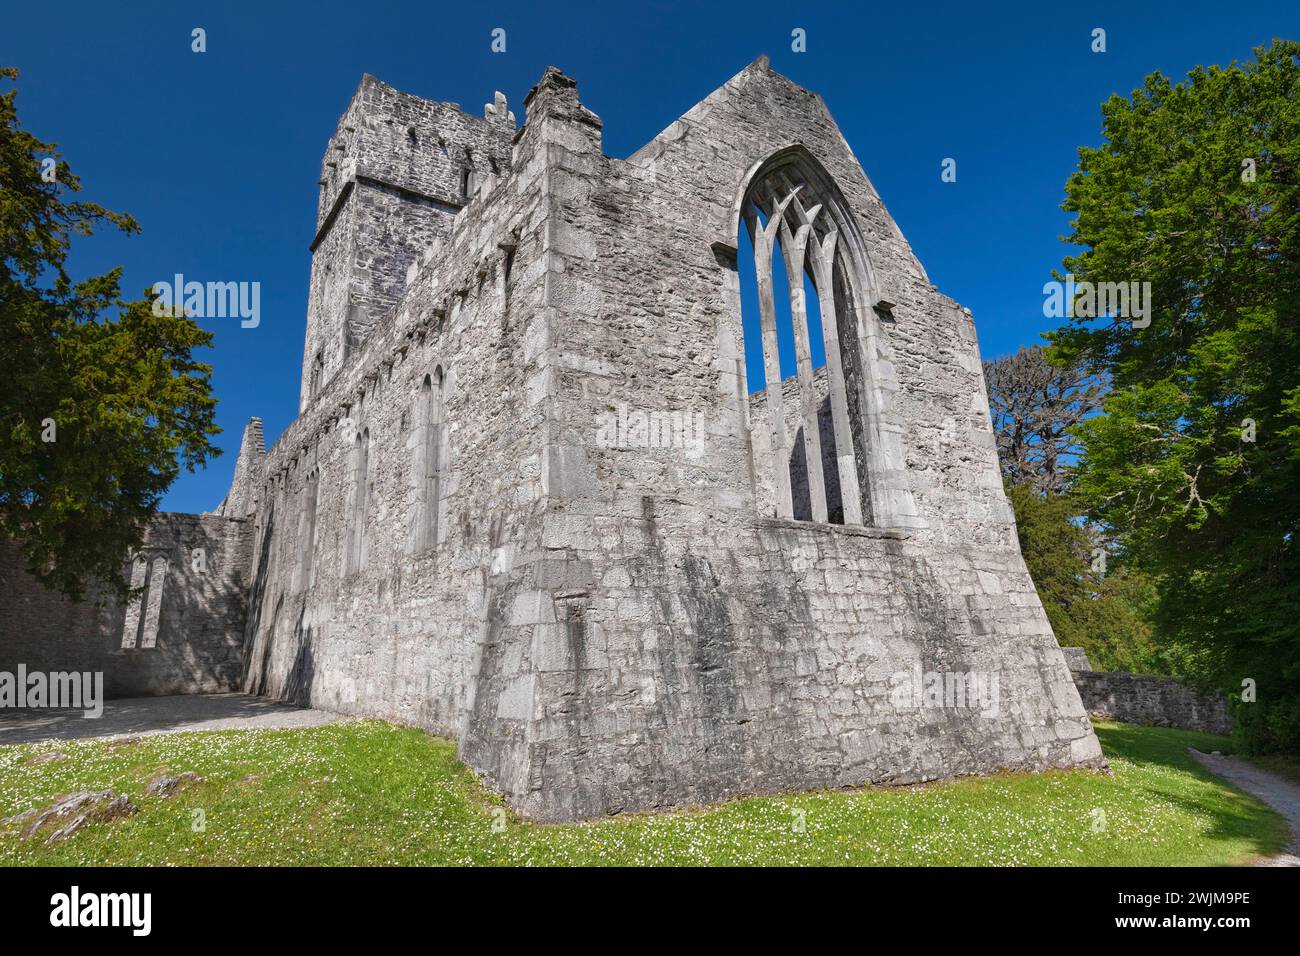 Irlanda, Contea di Kerry, Killarney, Abbazia di Muckross, fondata nel 1448 come convento francescano per gli Observantine Franciscans da Donal McCarthy Mor. Foto Stock